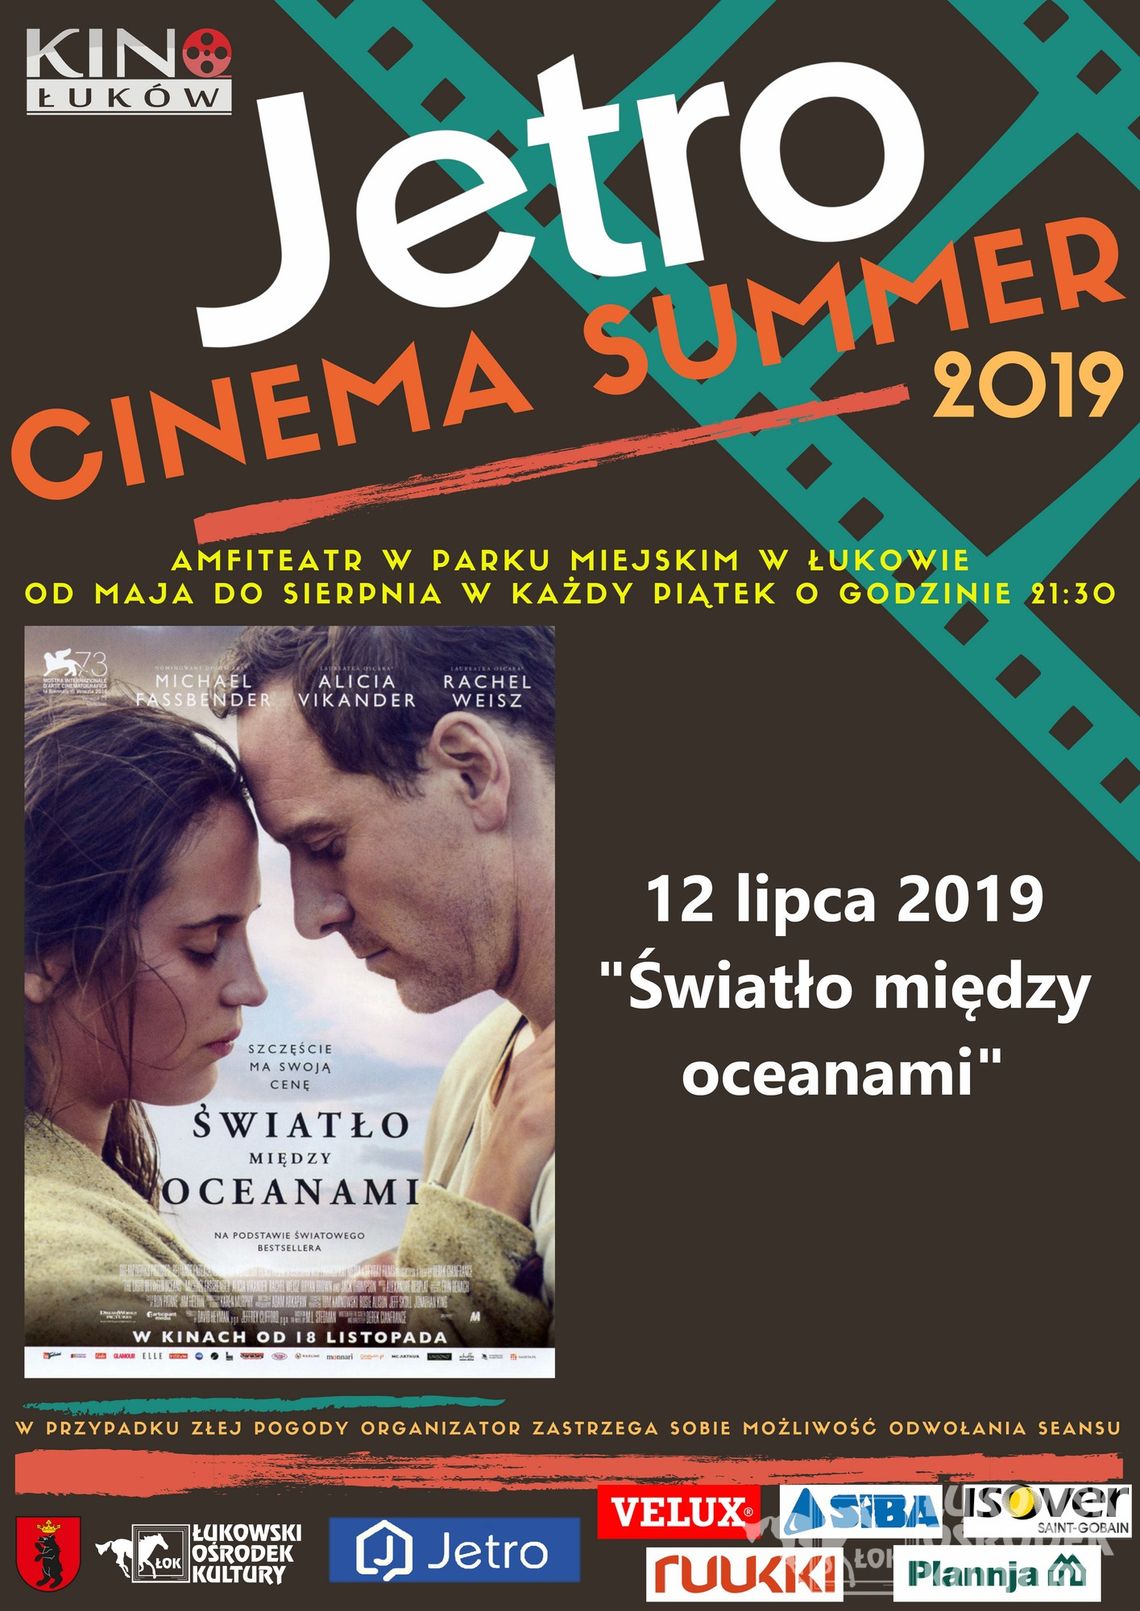 JETRO CINEMA SUMMER - „Światło między oceanami” /12 lipca 2019